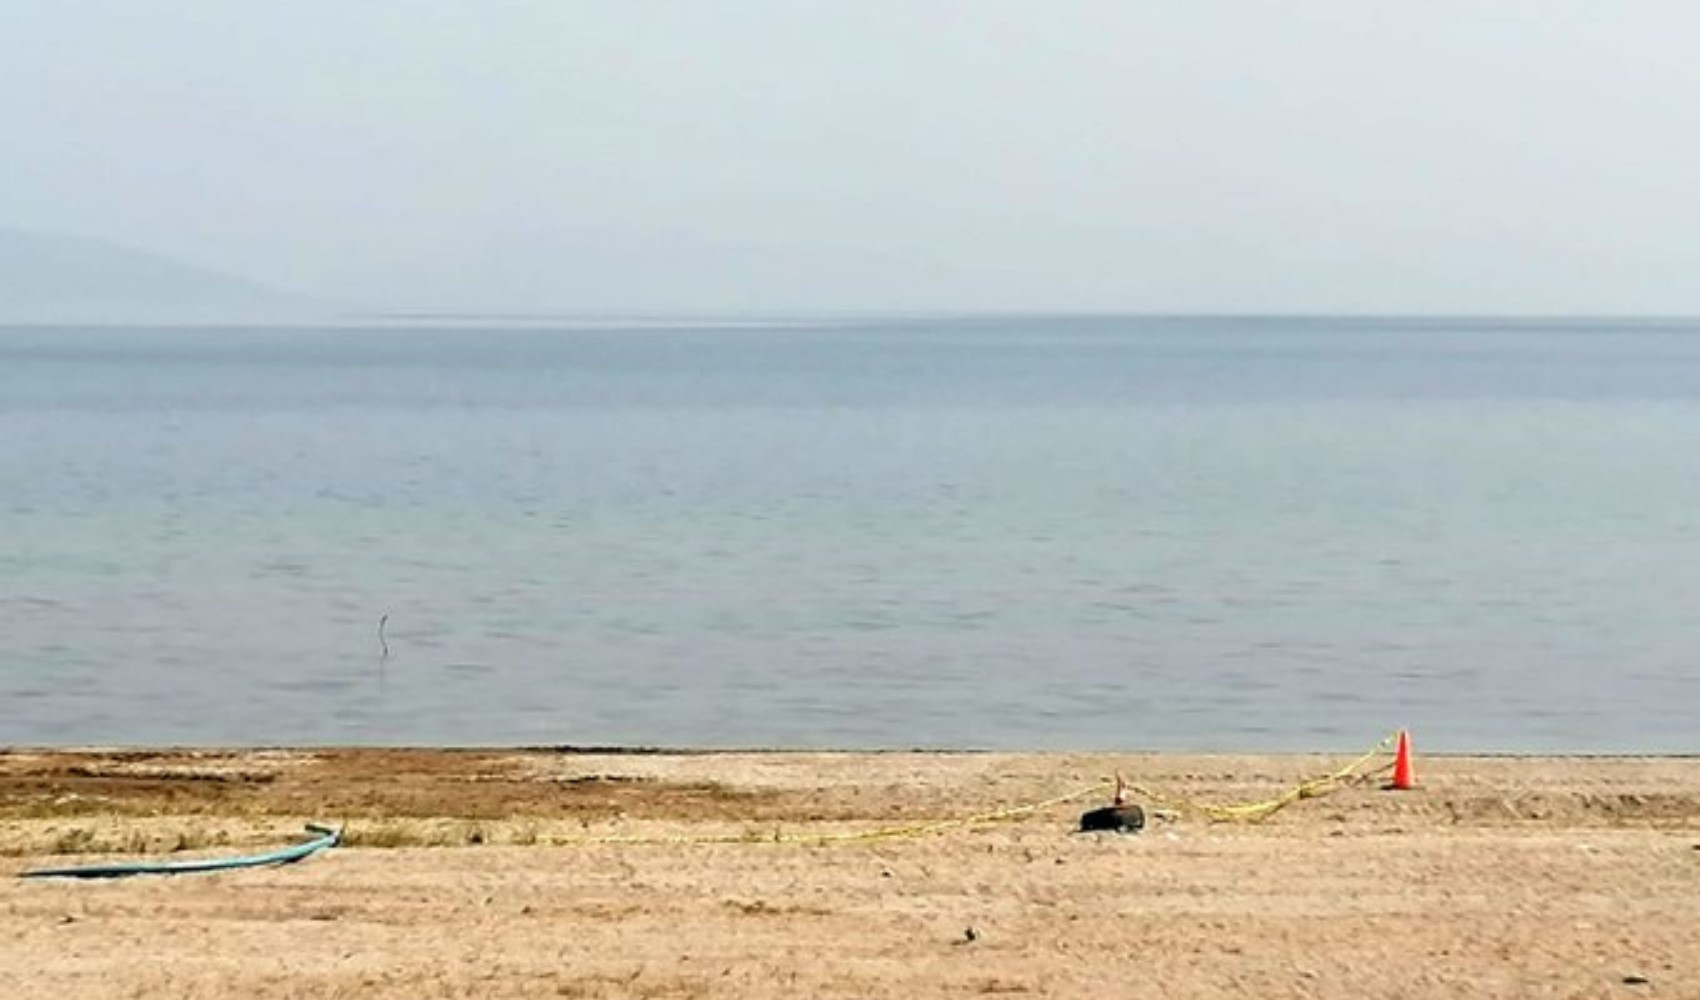 Eğirdir Gölü'nde patlamamış el bombaları bulundu